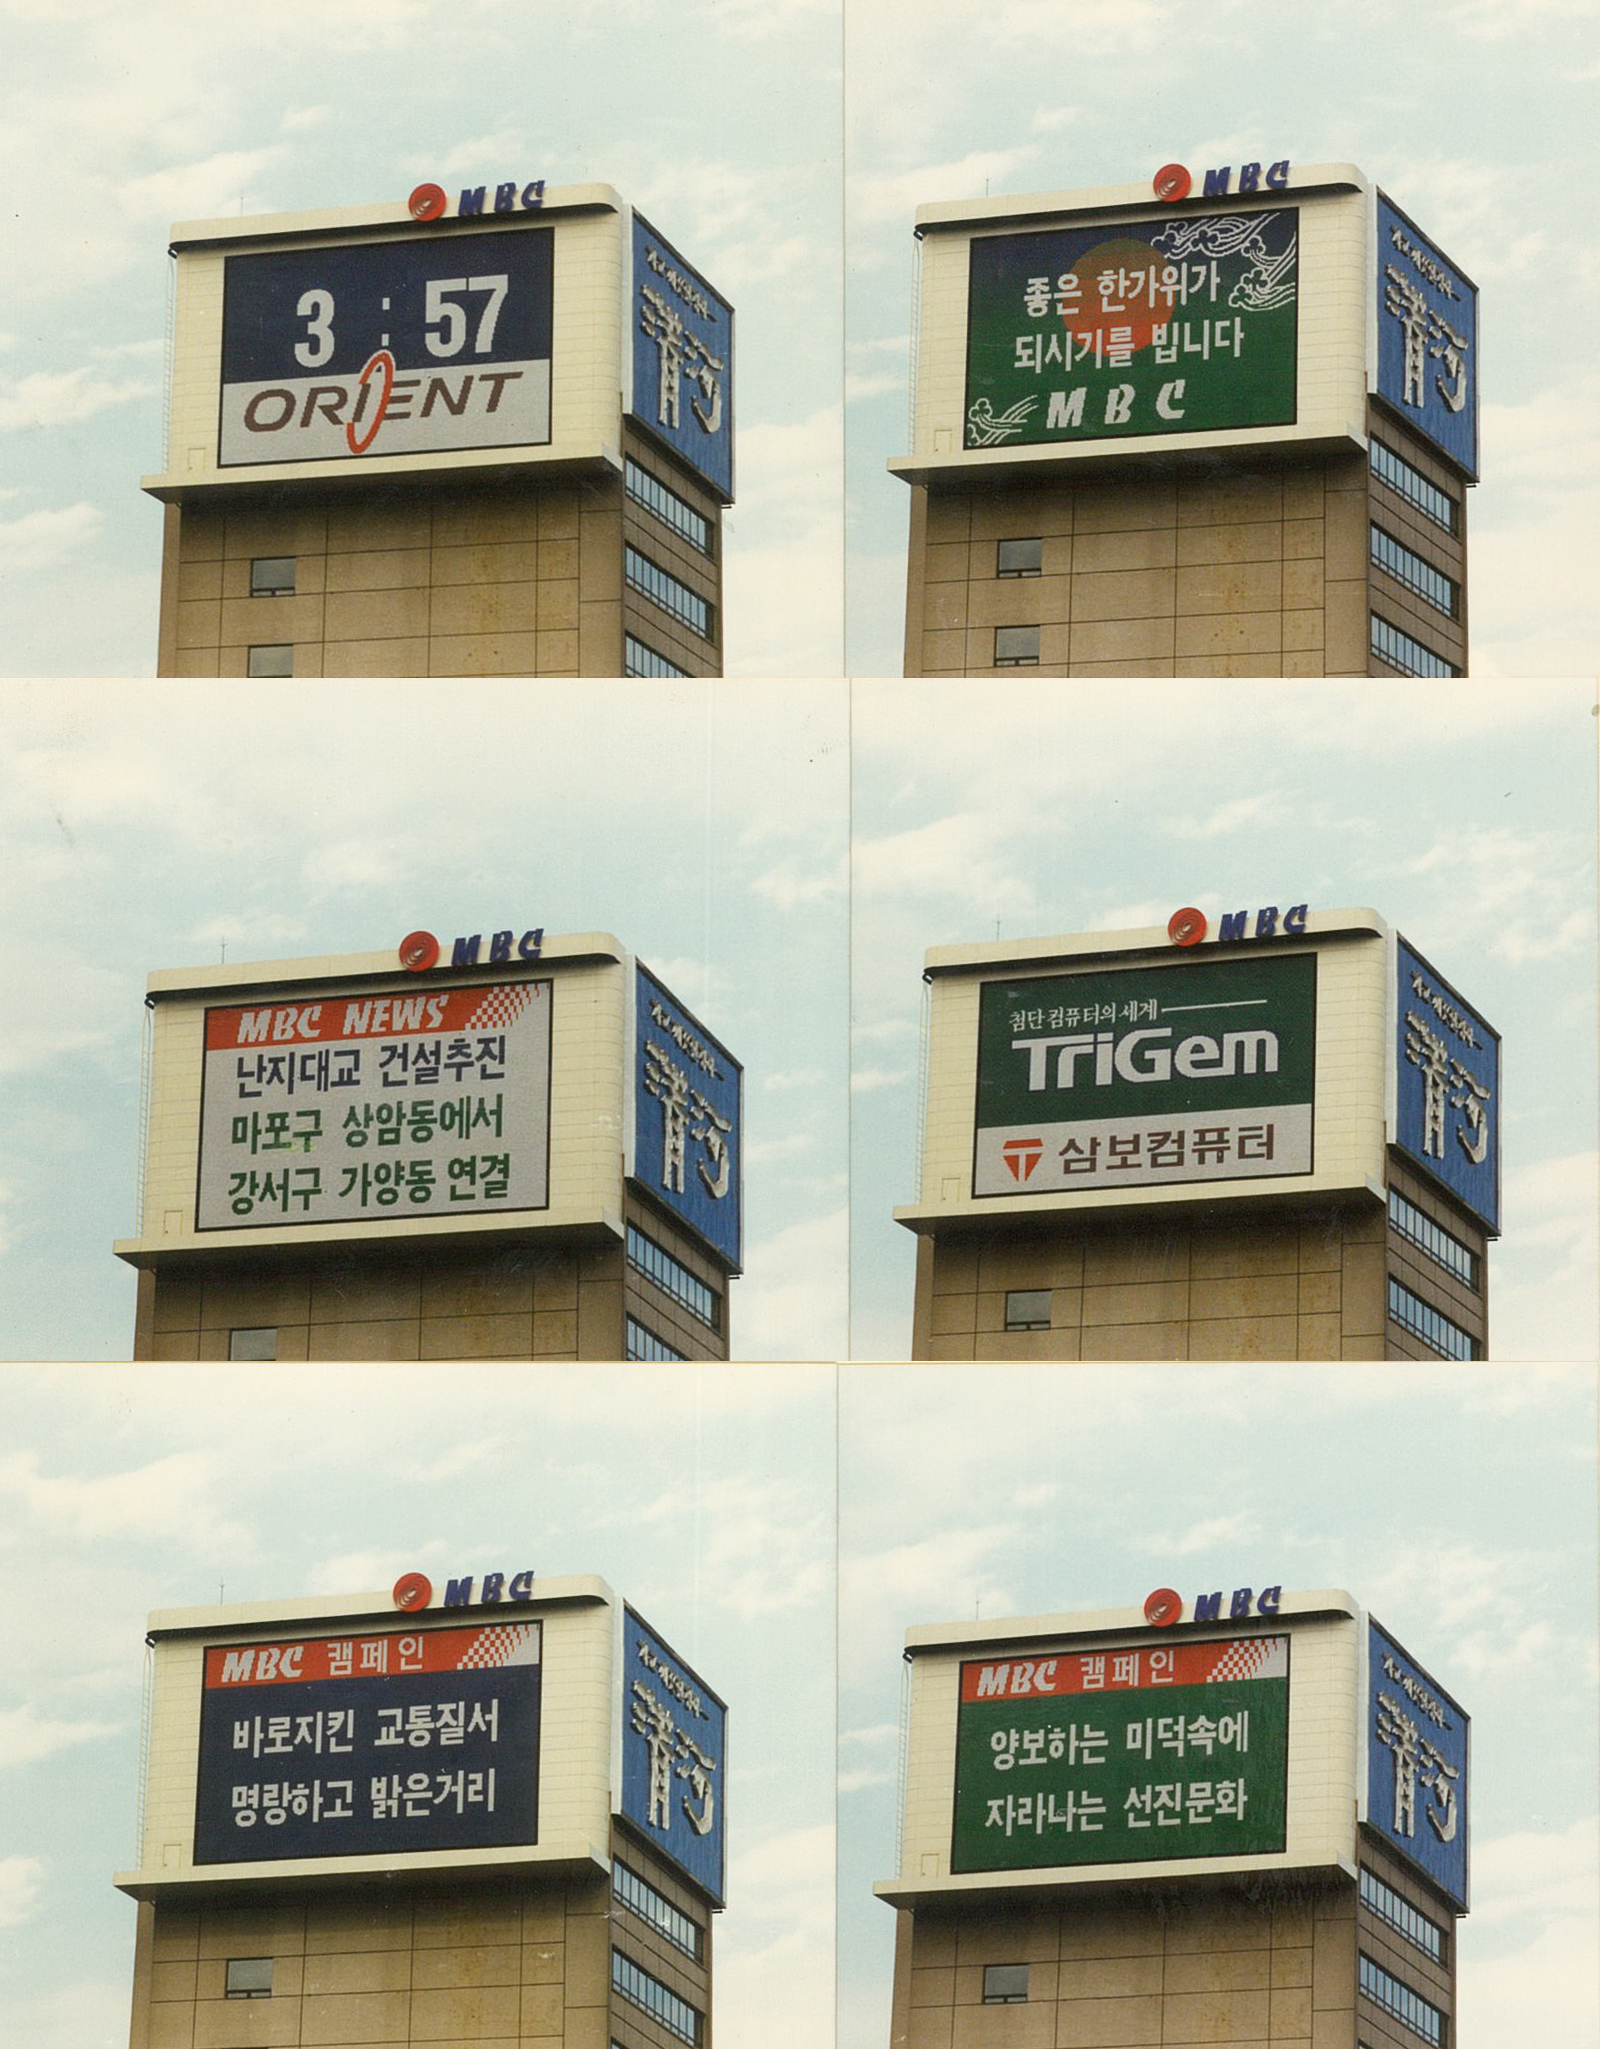 1989, 전광판 광고를 통해 송출되는 다양한 화면들